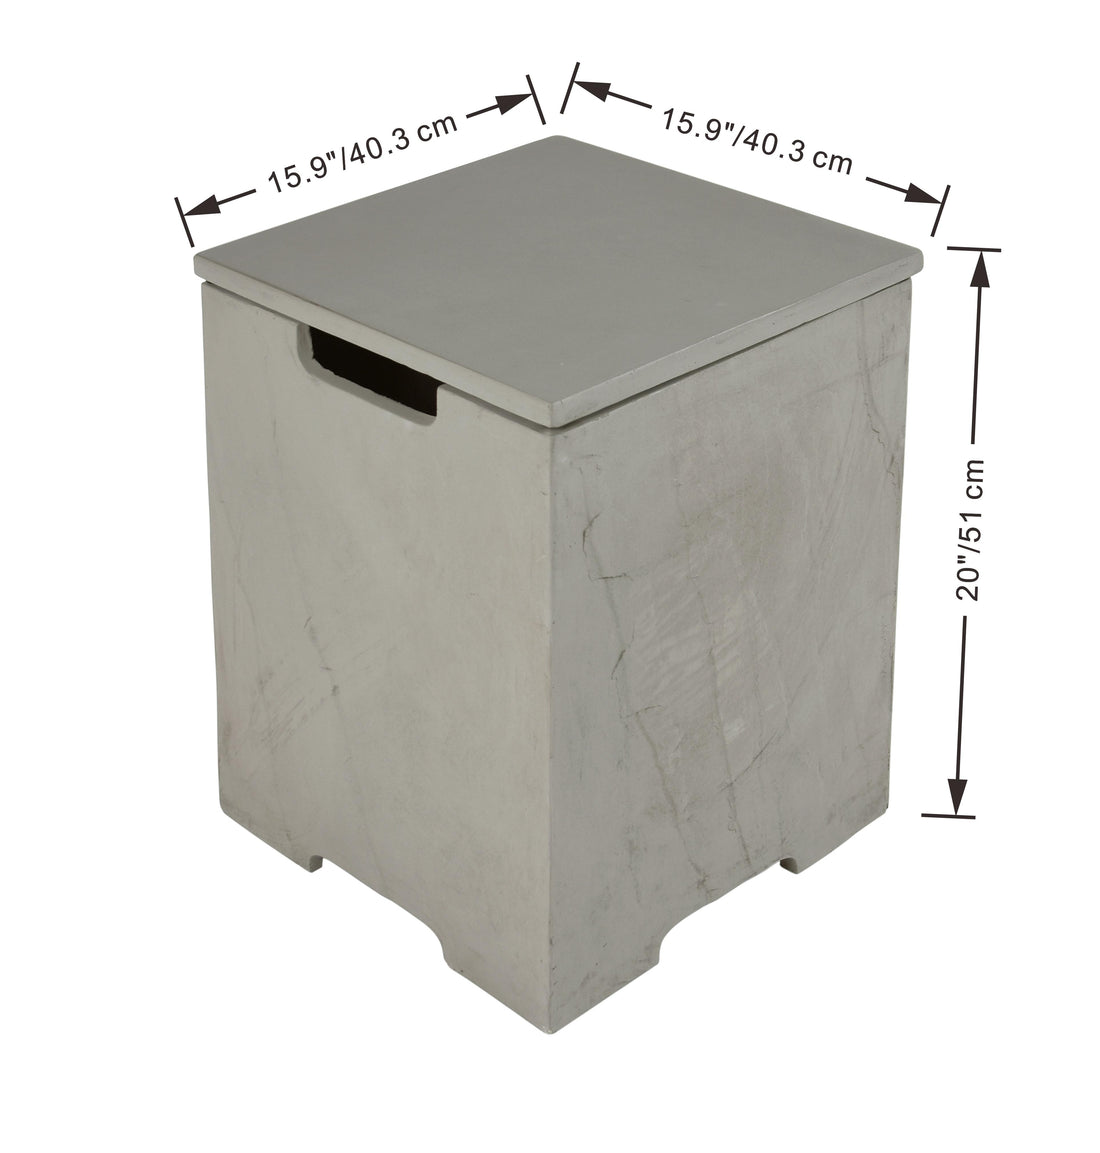 Natural Sandstone Concrete Propane Tank Cover - Space Gray